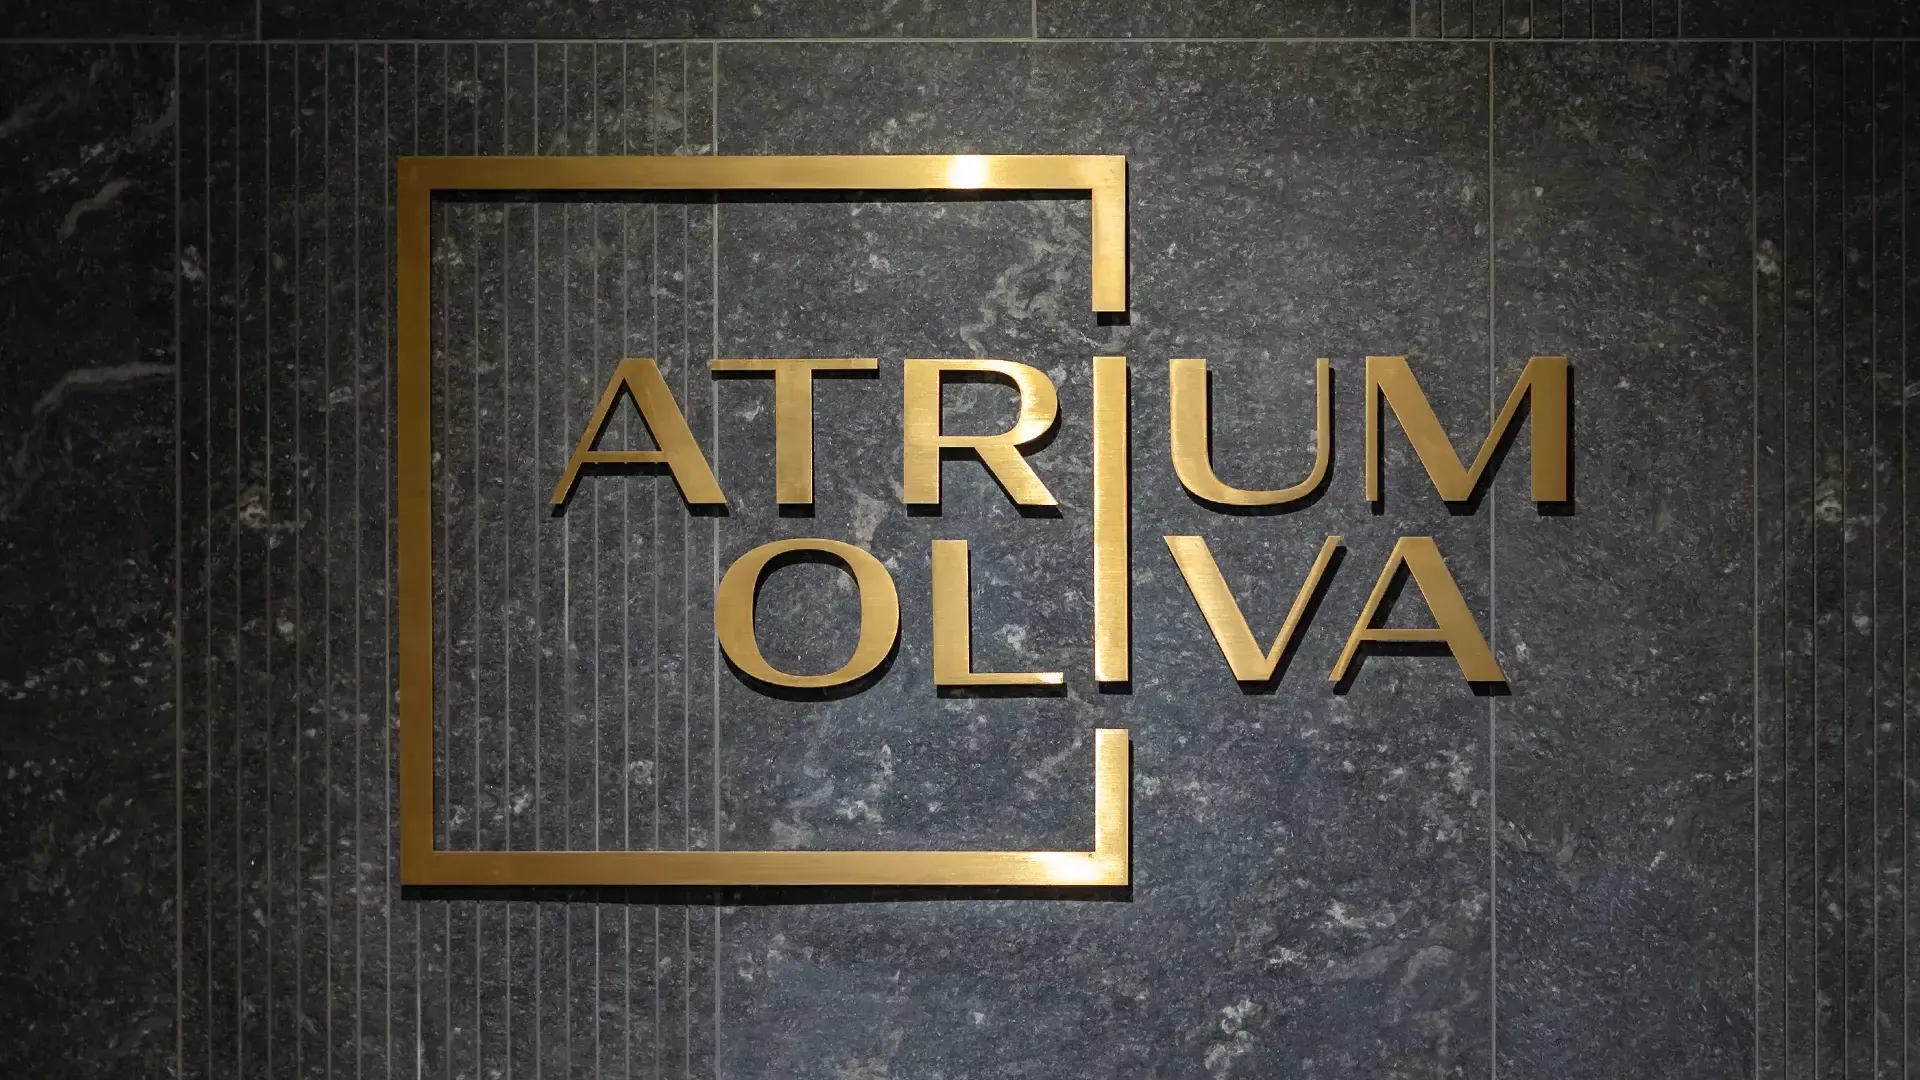 Lettere piatte Atrium Oliva - Lettere piatte Atrium Oliva in lamiera spazzolata